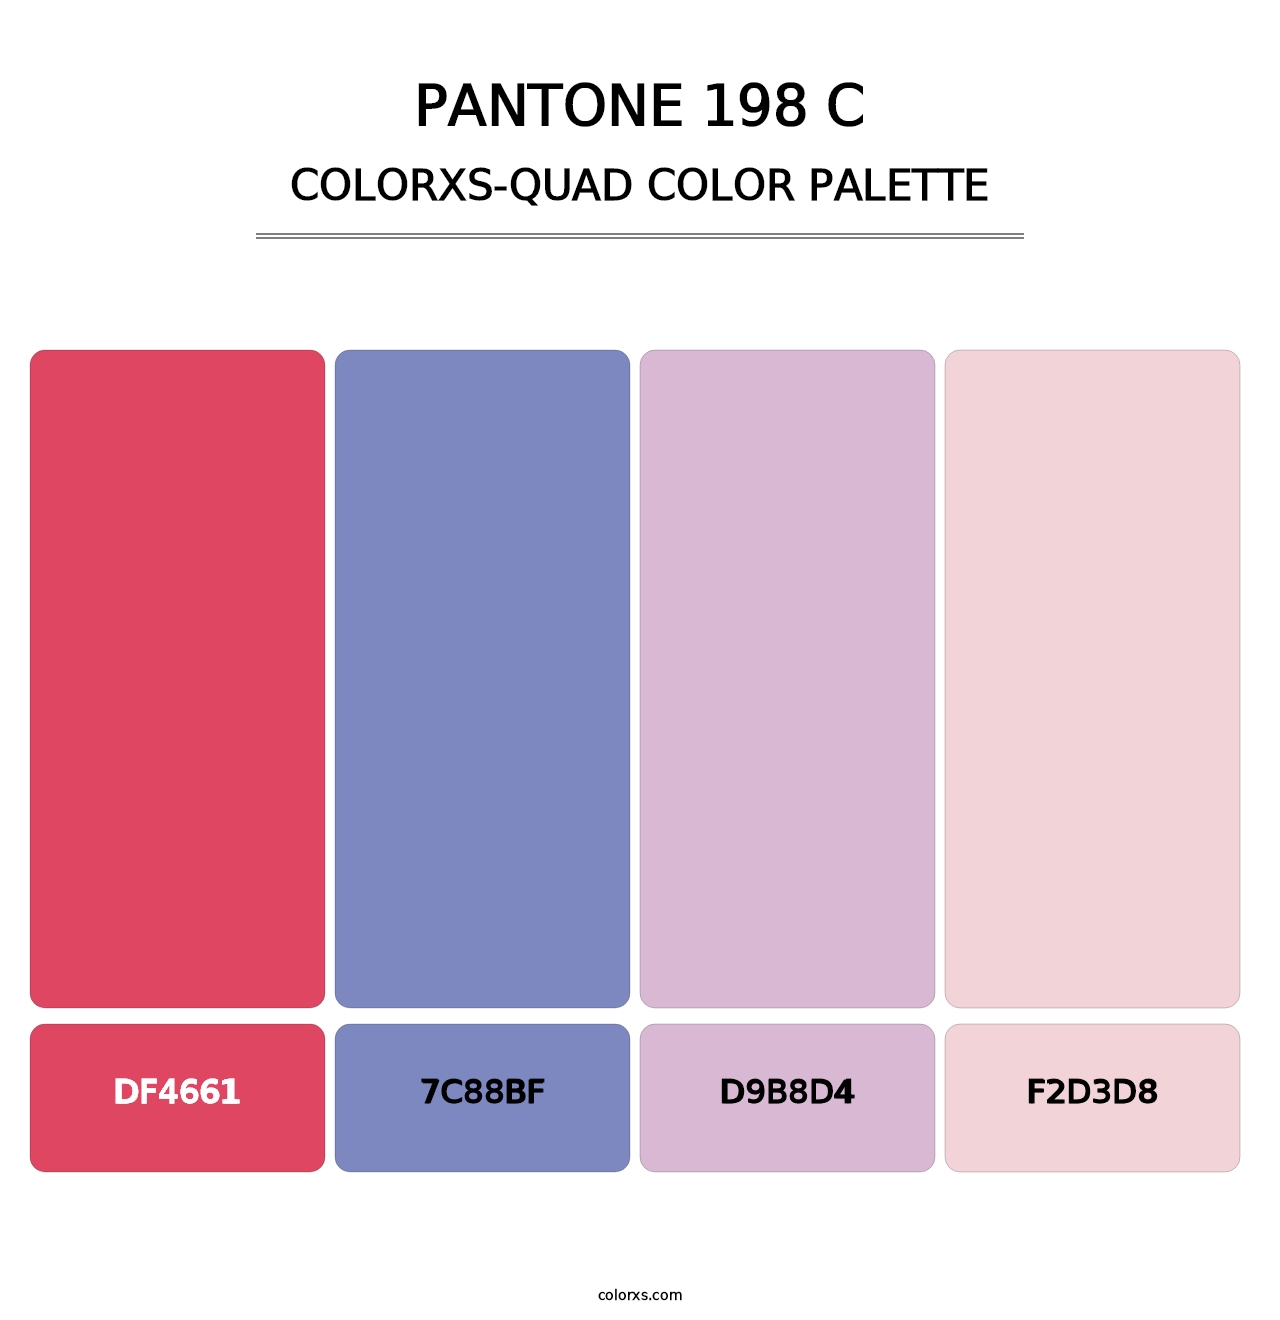 PANTONE 198 C - Colorxs Quad Palette